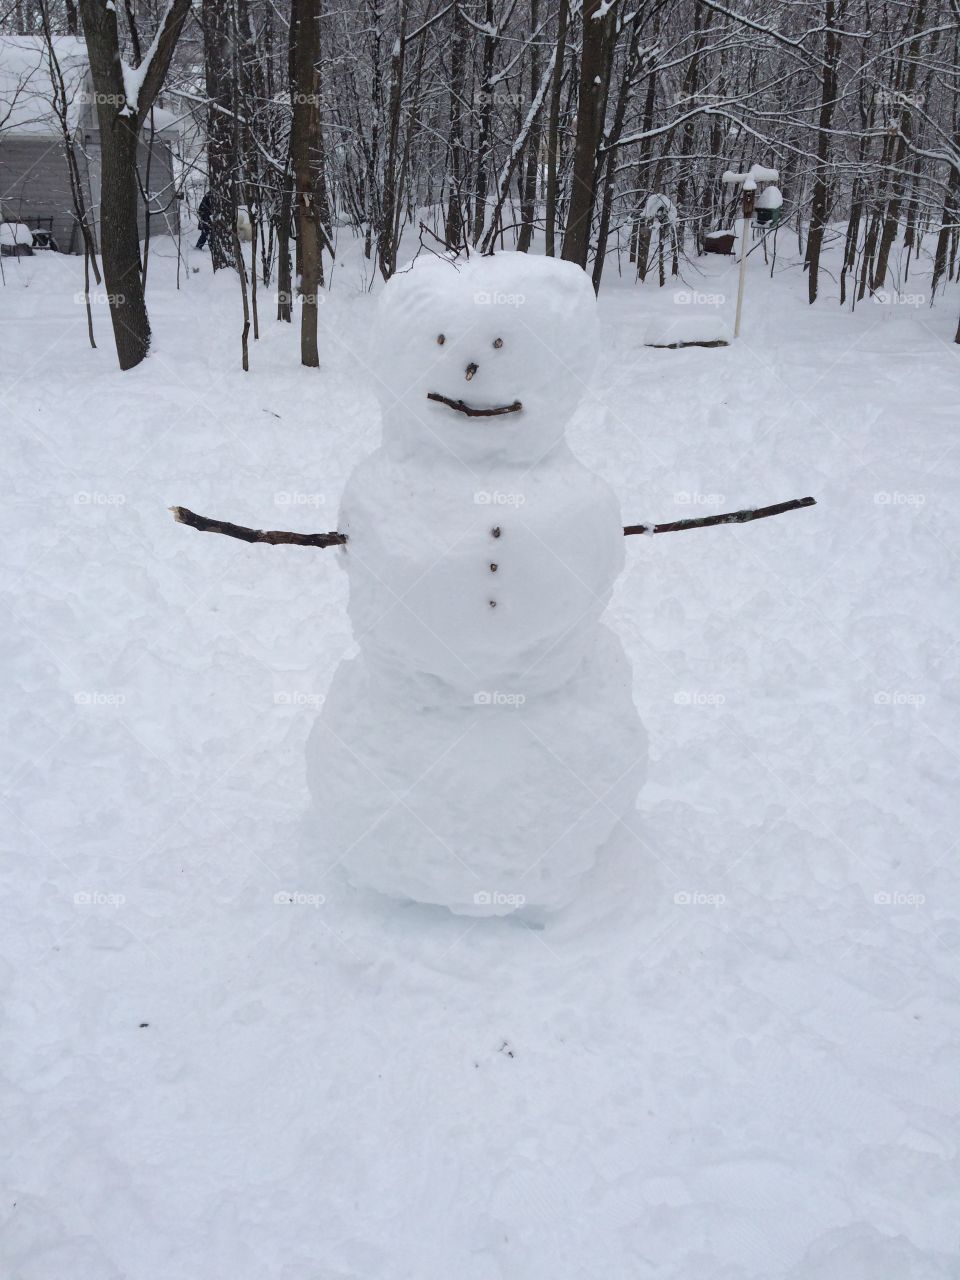 Happy snowman